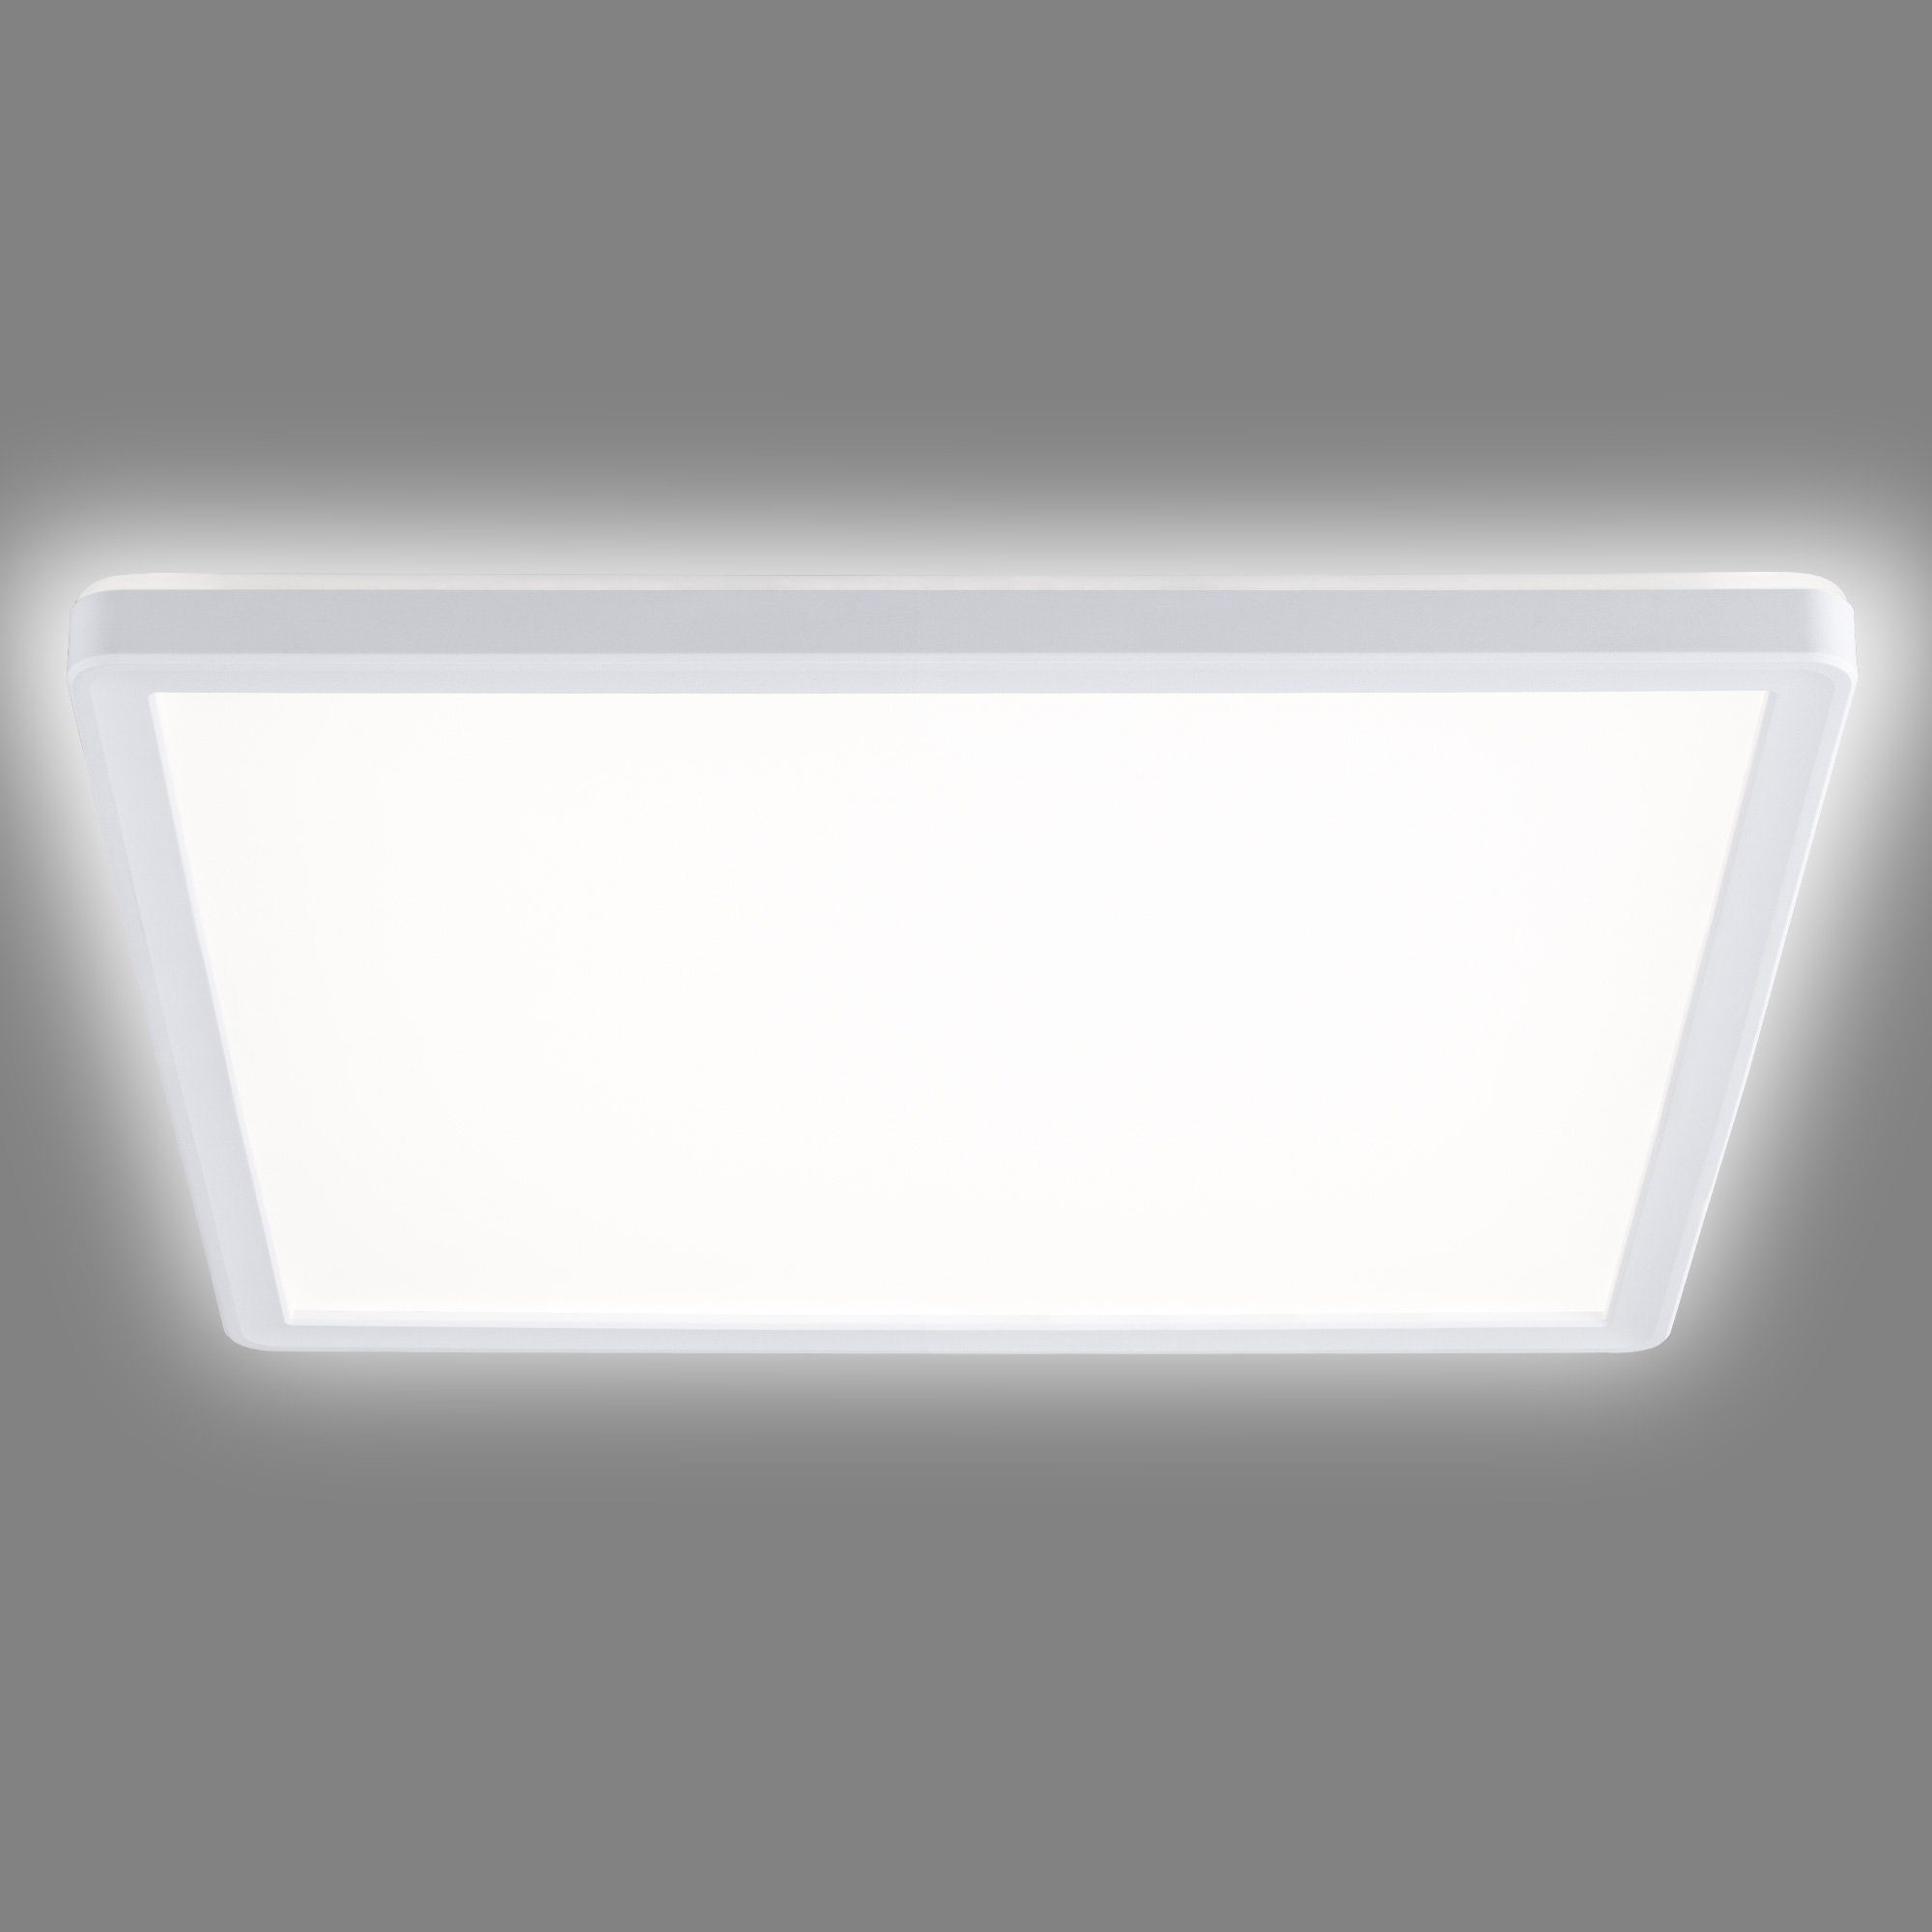 Navaris LED Deckenleuchte, LED Deckenlampe mit zusätzlicher  Hintergrundbeleuchtung - 18 Watt - 29,3 x 29,3 x 2,8cm - 4000K - LED  Dachlampe Panel ultra flach quadratisch online kaufen | OTTO